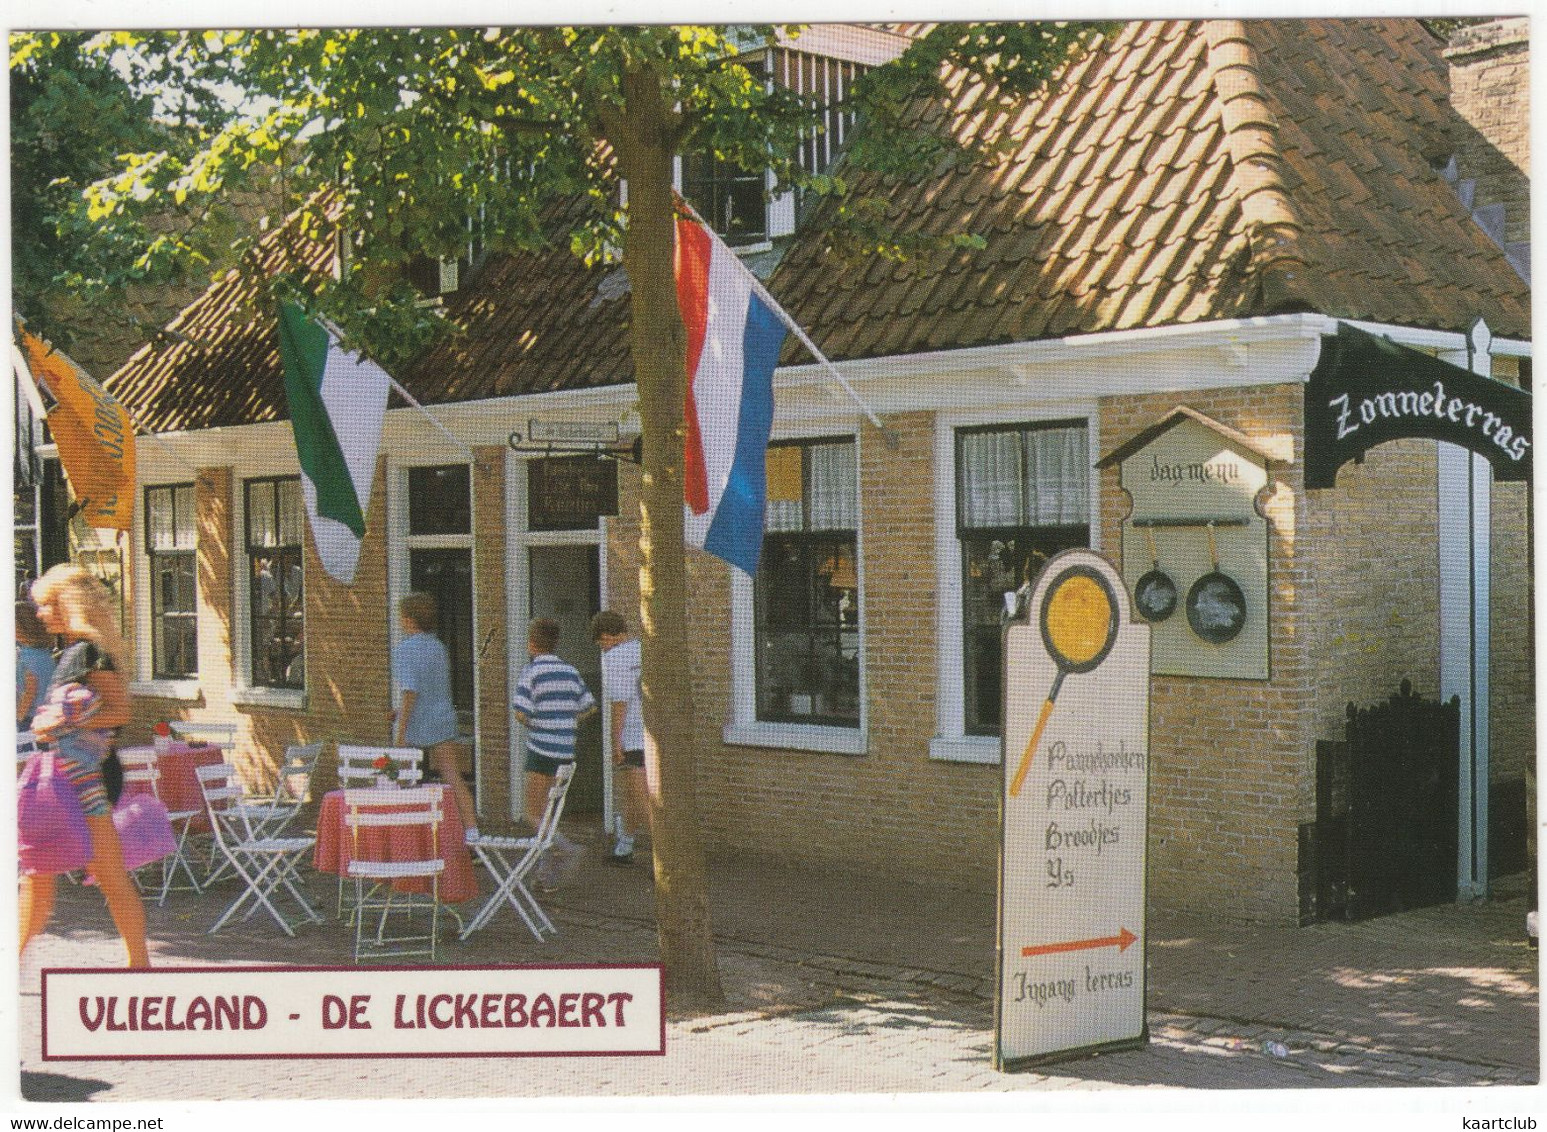 Vlieland - Poffertjes En Pannekoekhuis 'De Lickebaert', Dorpsstraat 2-4 (Fam. V. Heerde) - (Nederland/Holland) - Vlieland